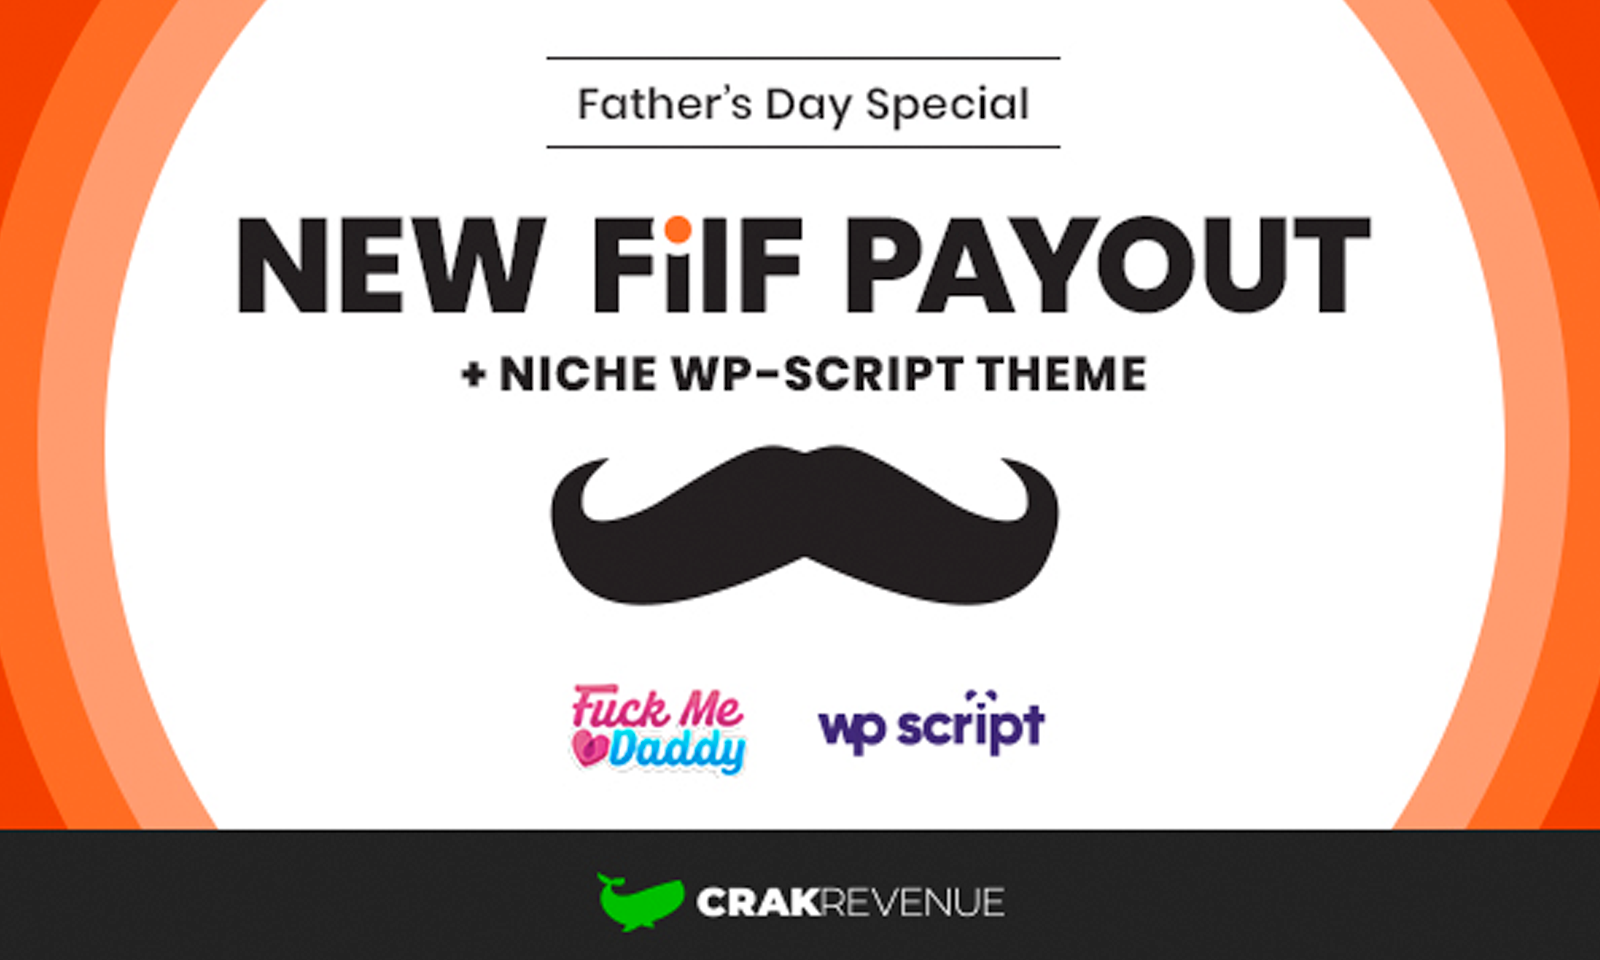 Celebrate Father’s Day with WP-Script, FILF, CrakRevenue Promo